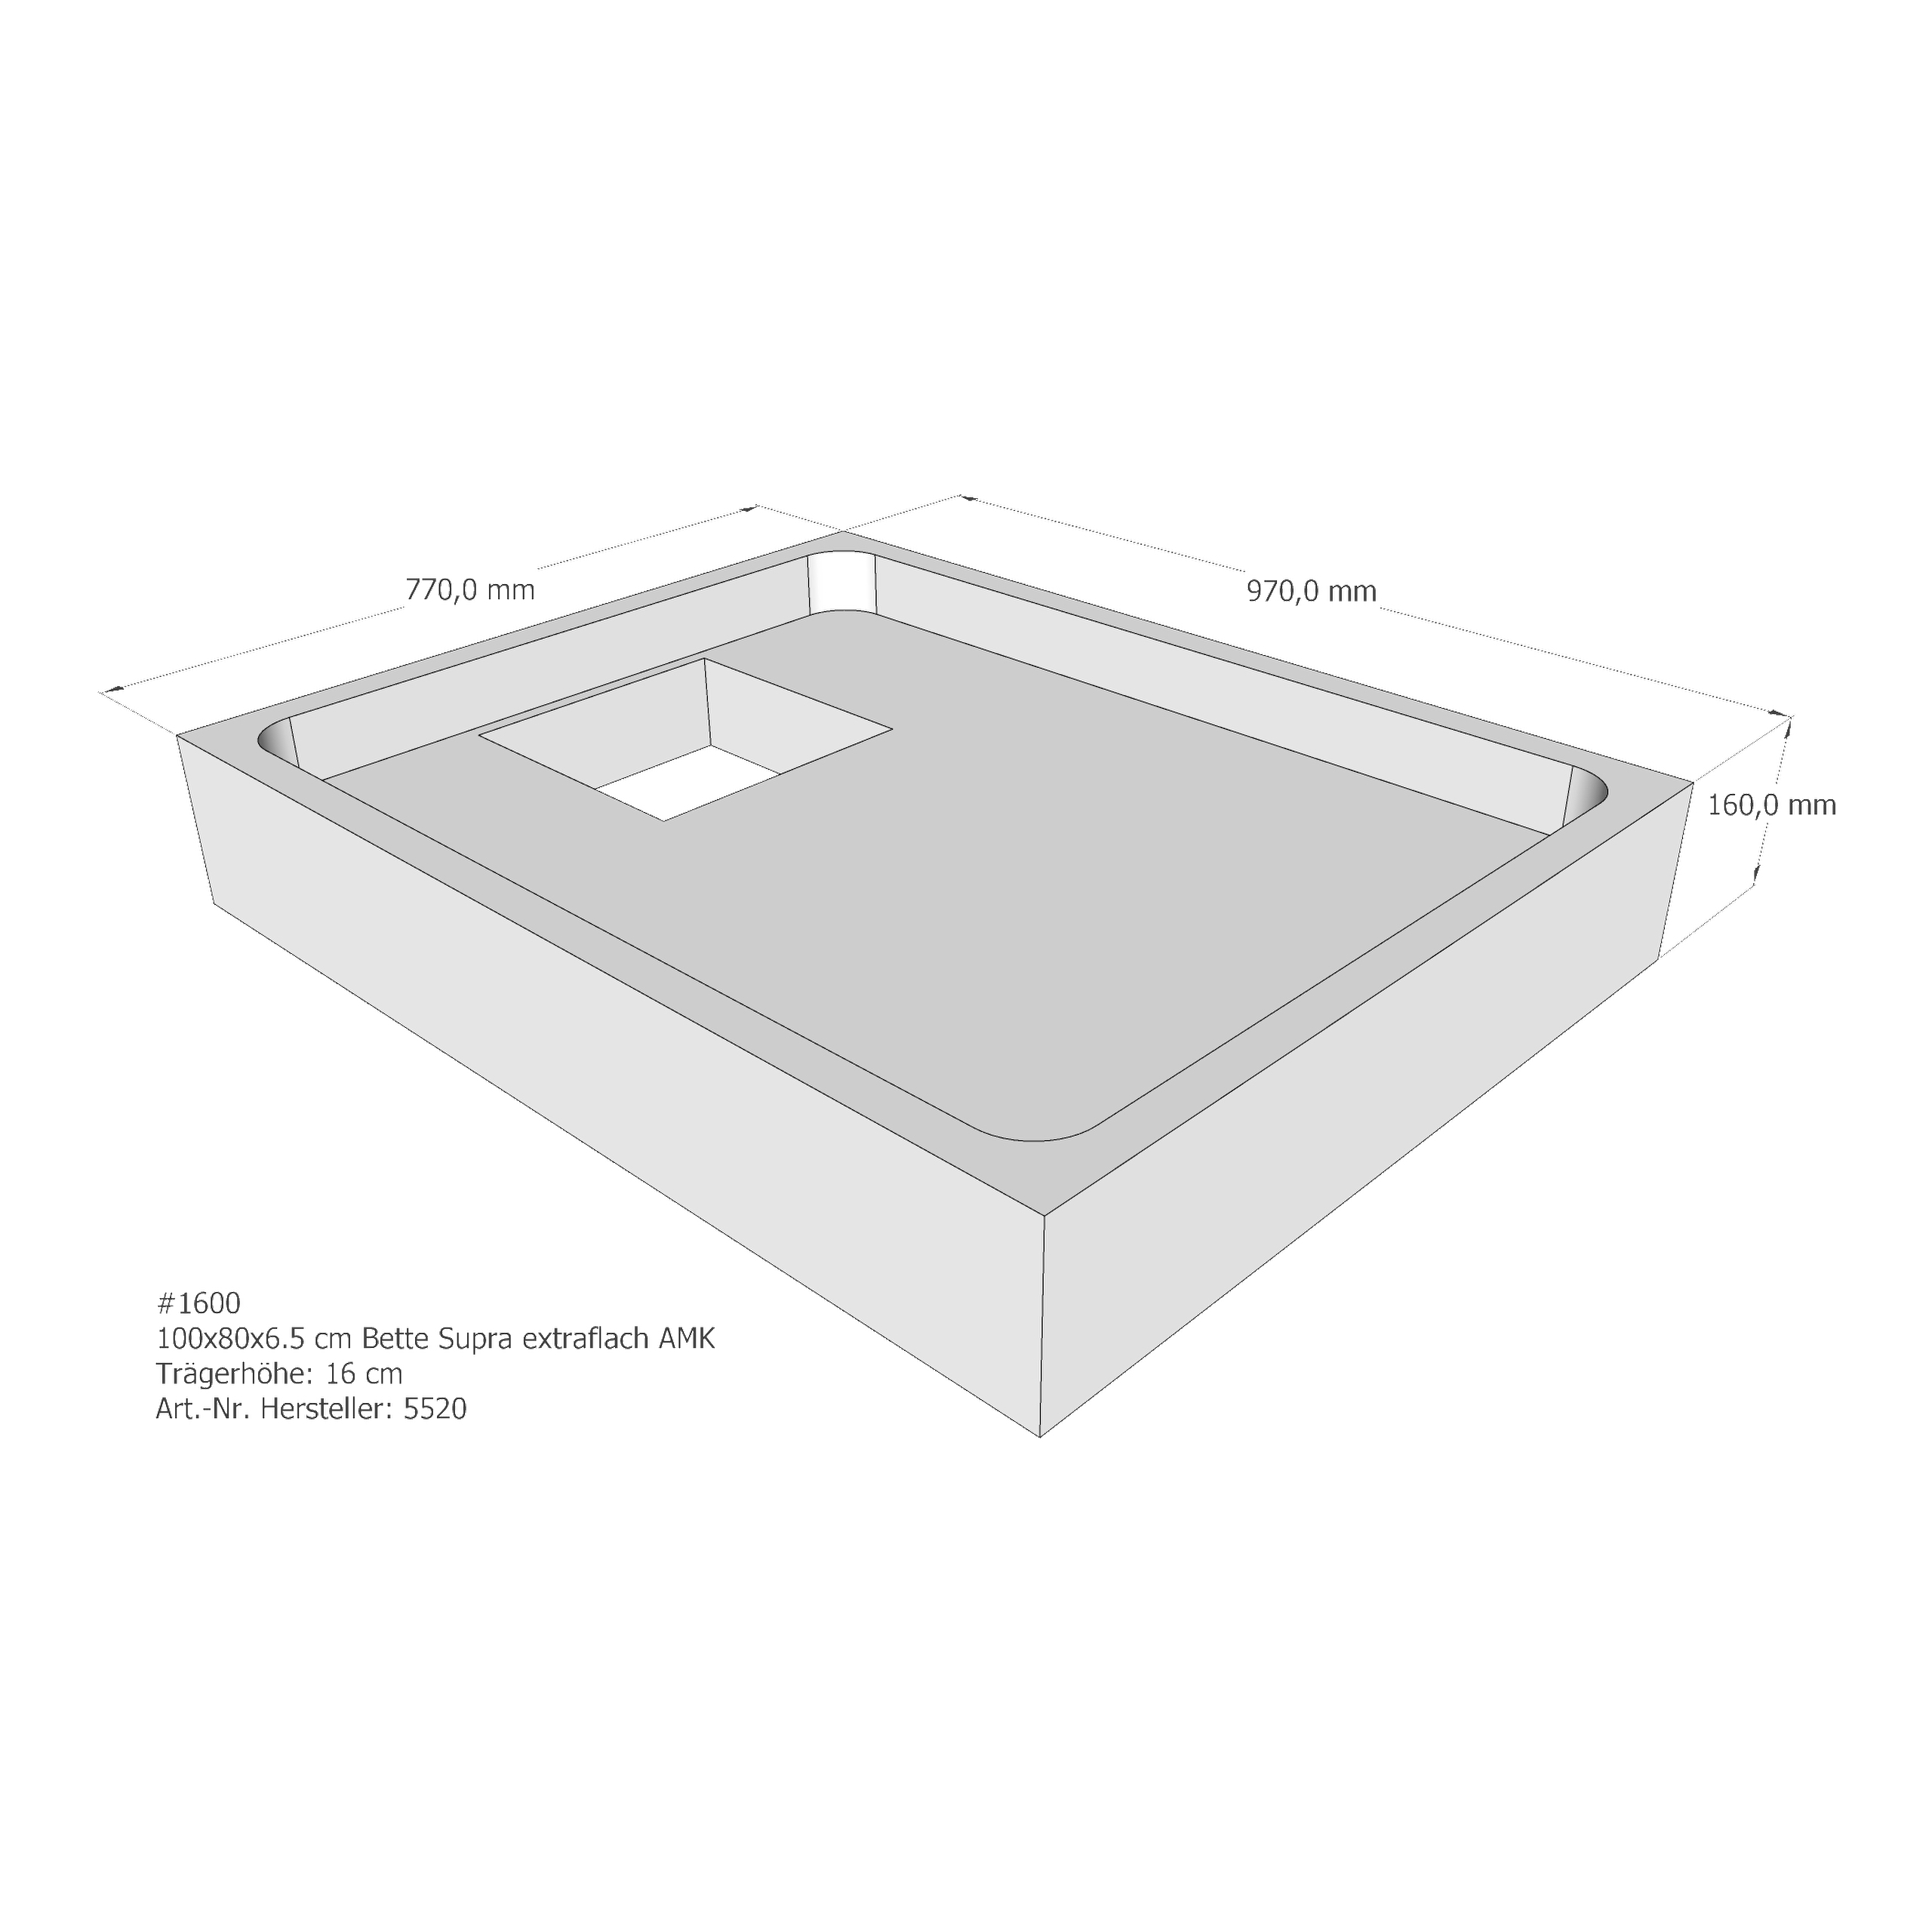 Duschwannenträger für Bette BetteSupra (extraflach) 100 × 80 × 6,5 cm